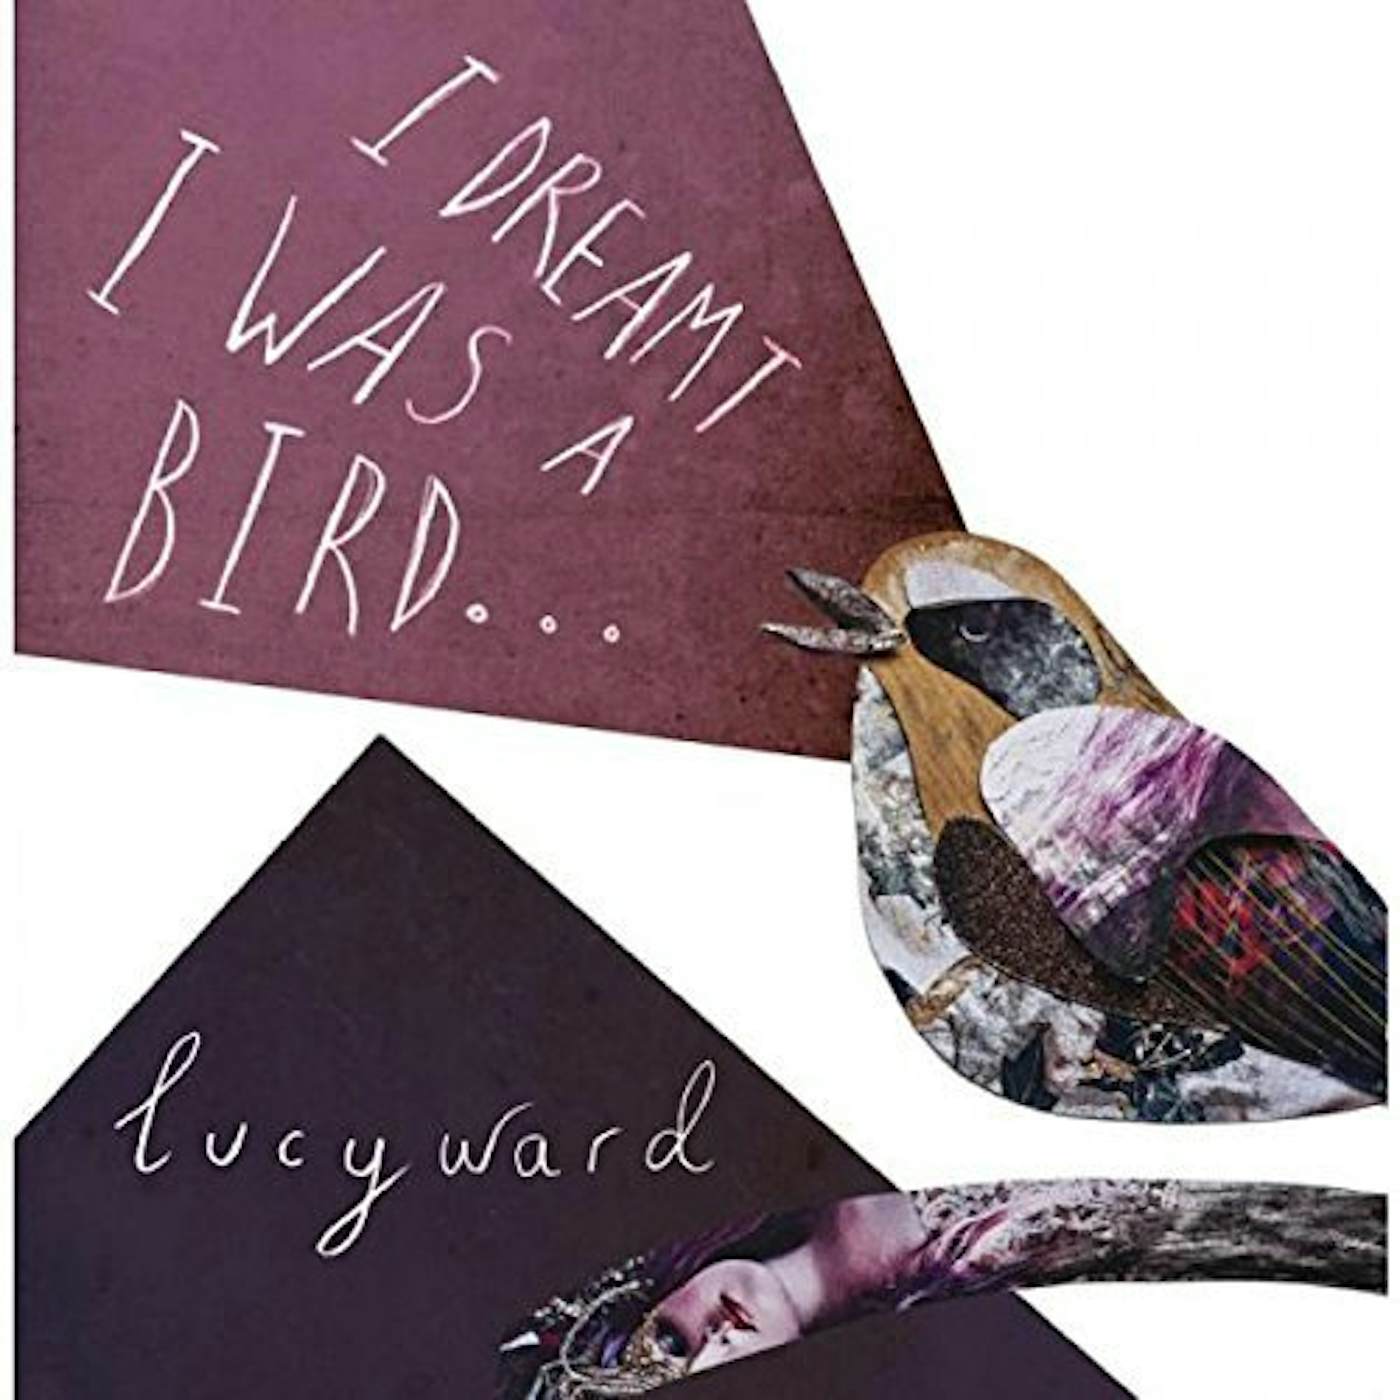 Lucy Ward I DREAMT I WAS A BIRD CD